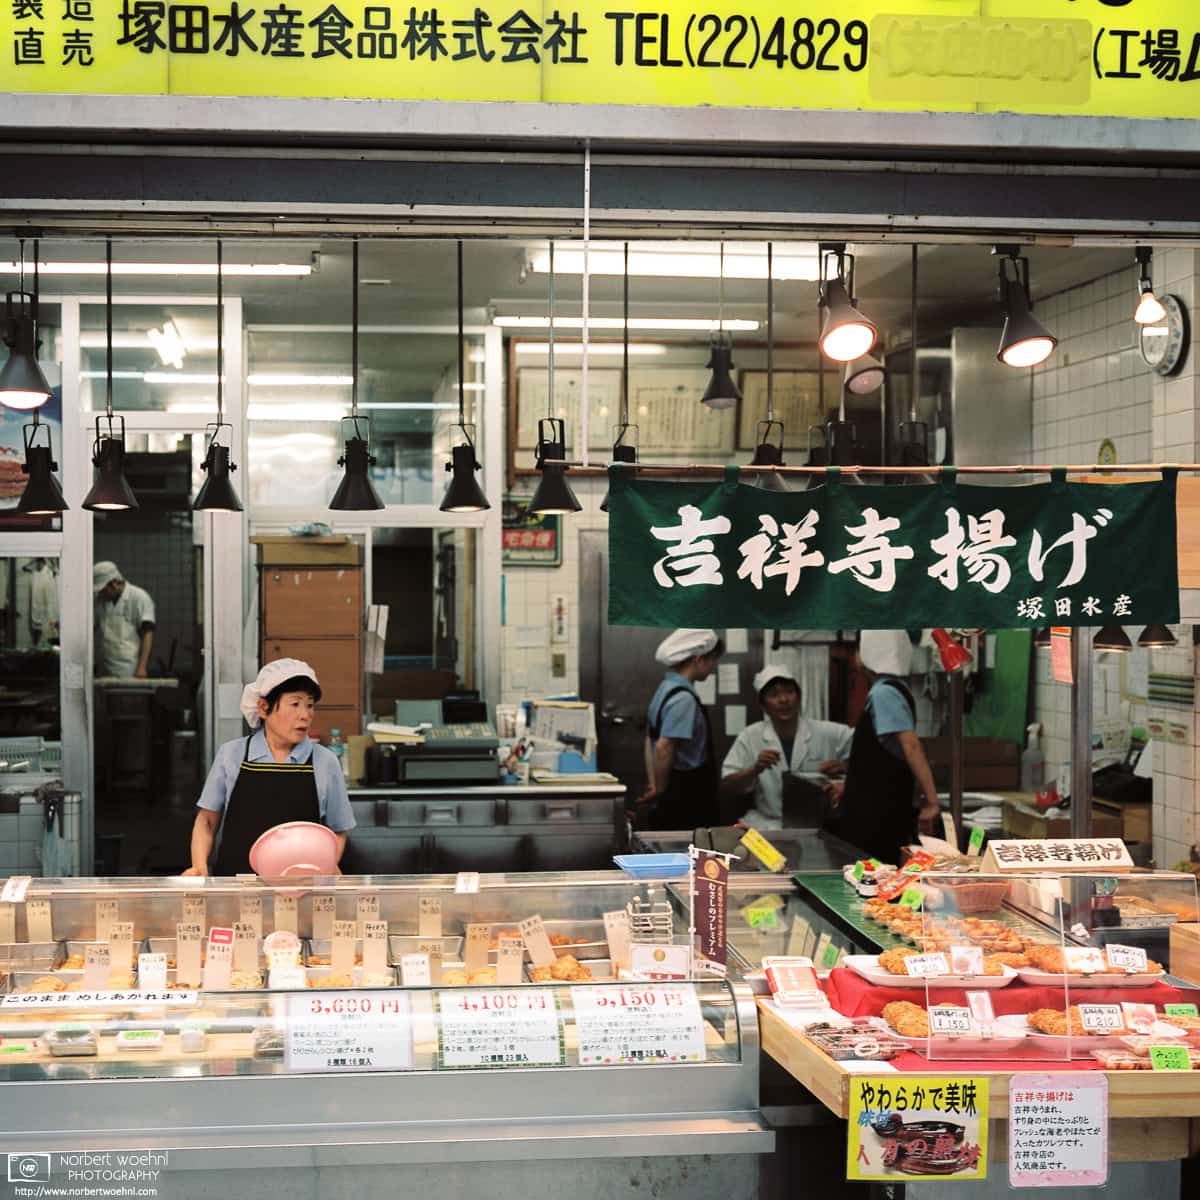 Fried Fishcake Shop, Kichijoji, Tokyo, Japan Photo